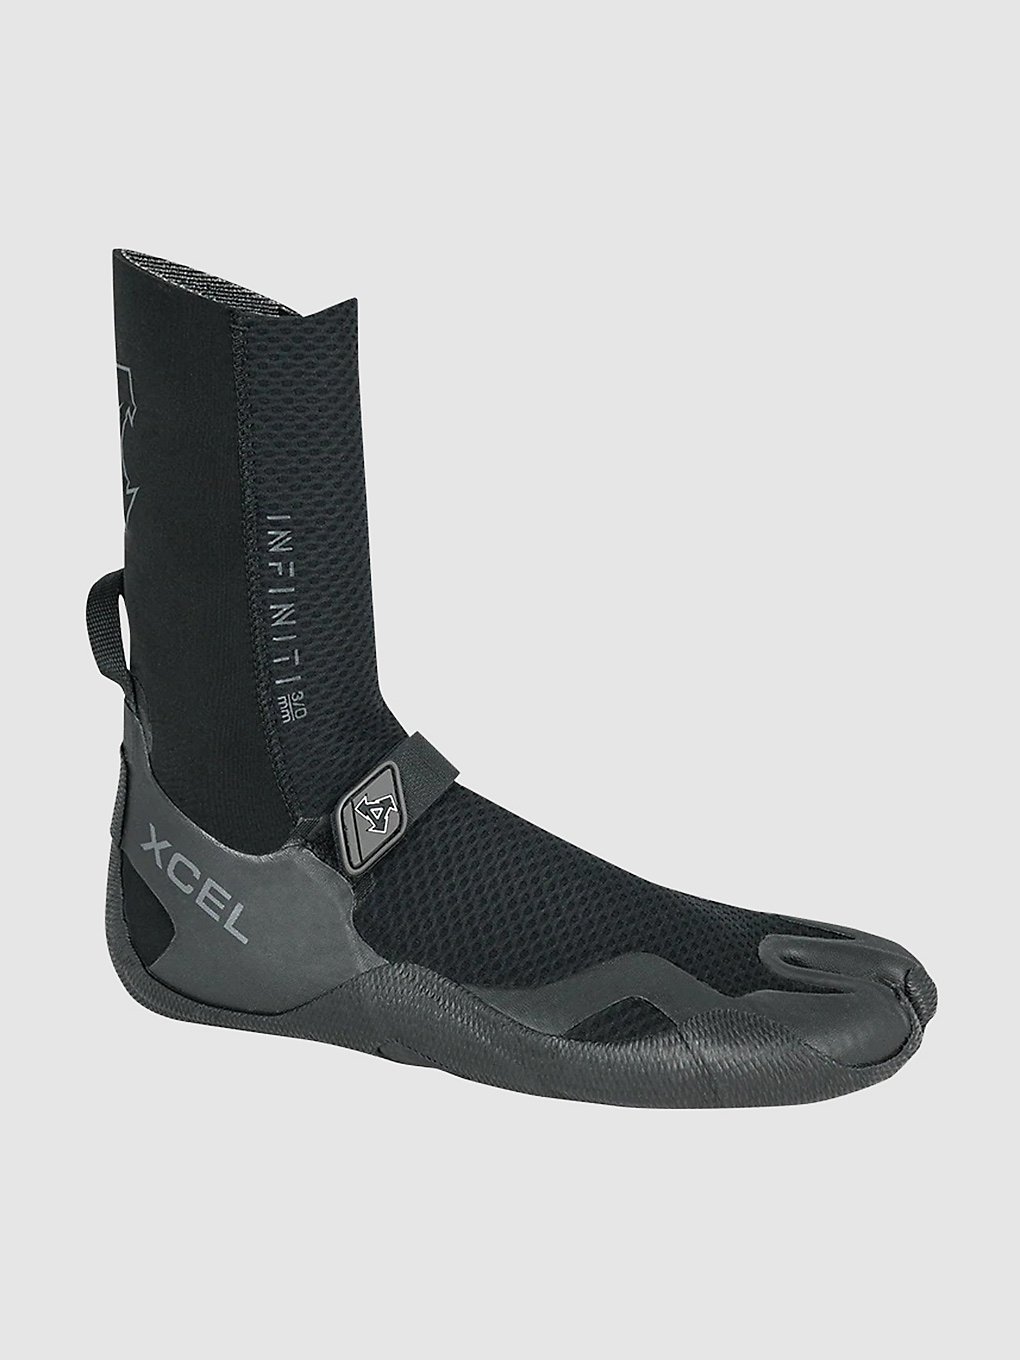 Xcel Split Toe Infiniti 3mm Surf schoenen zwart